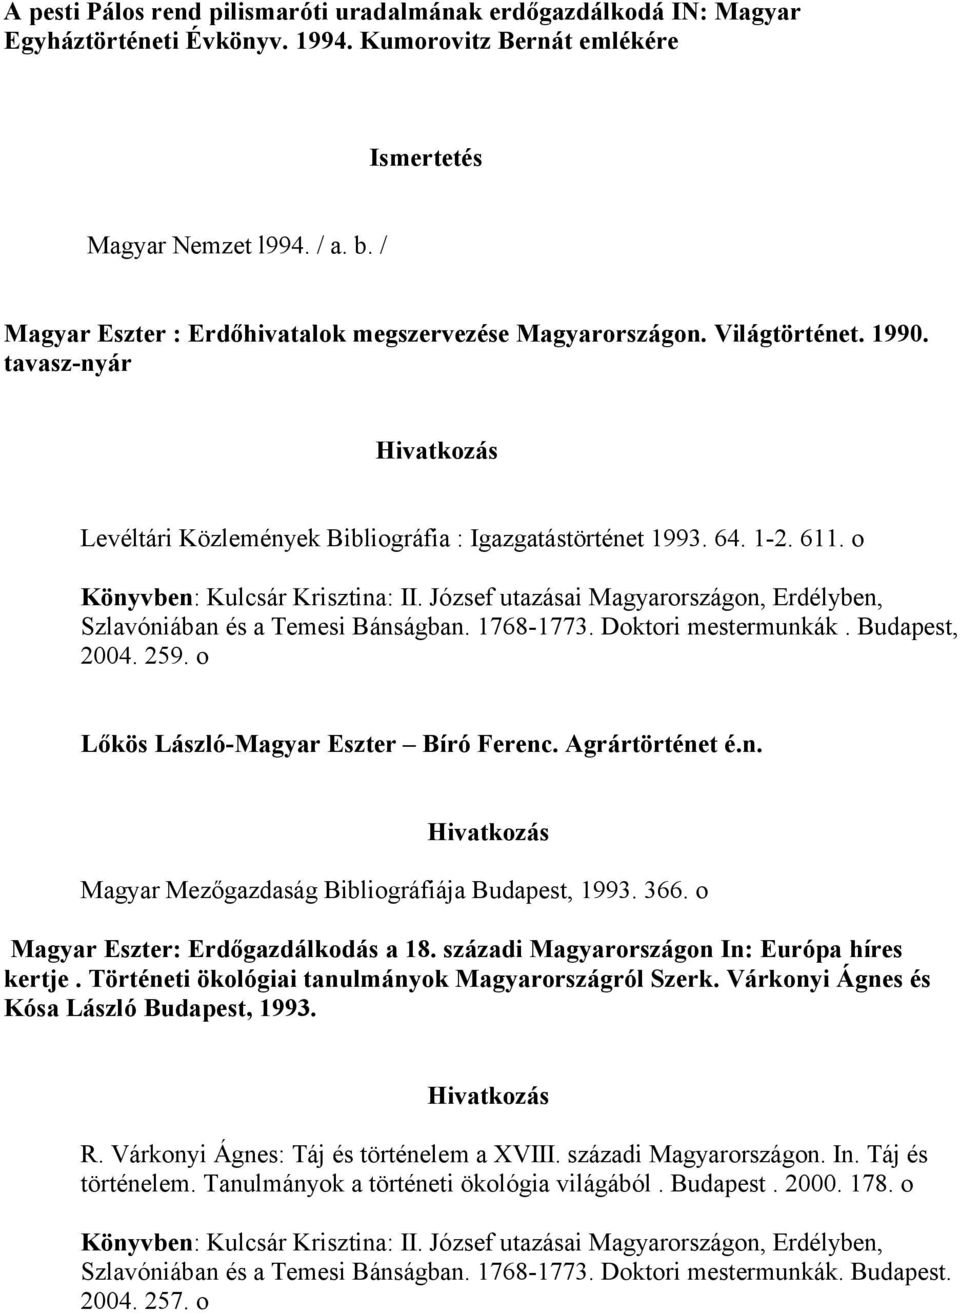 o Könyvben: Kulcsár Krisztina: II. József utazásai Magyarországon, Erdélyben, Szlavóniában és a Temesi Bánságban. 1768-1773. Doktori mestermunkák. Budapest, 2004. 259.